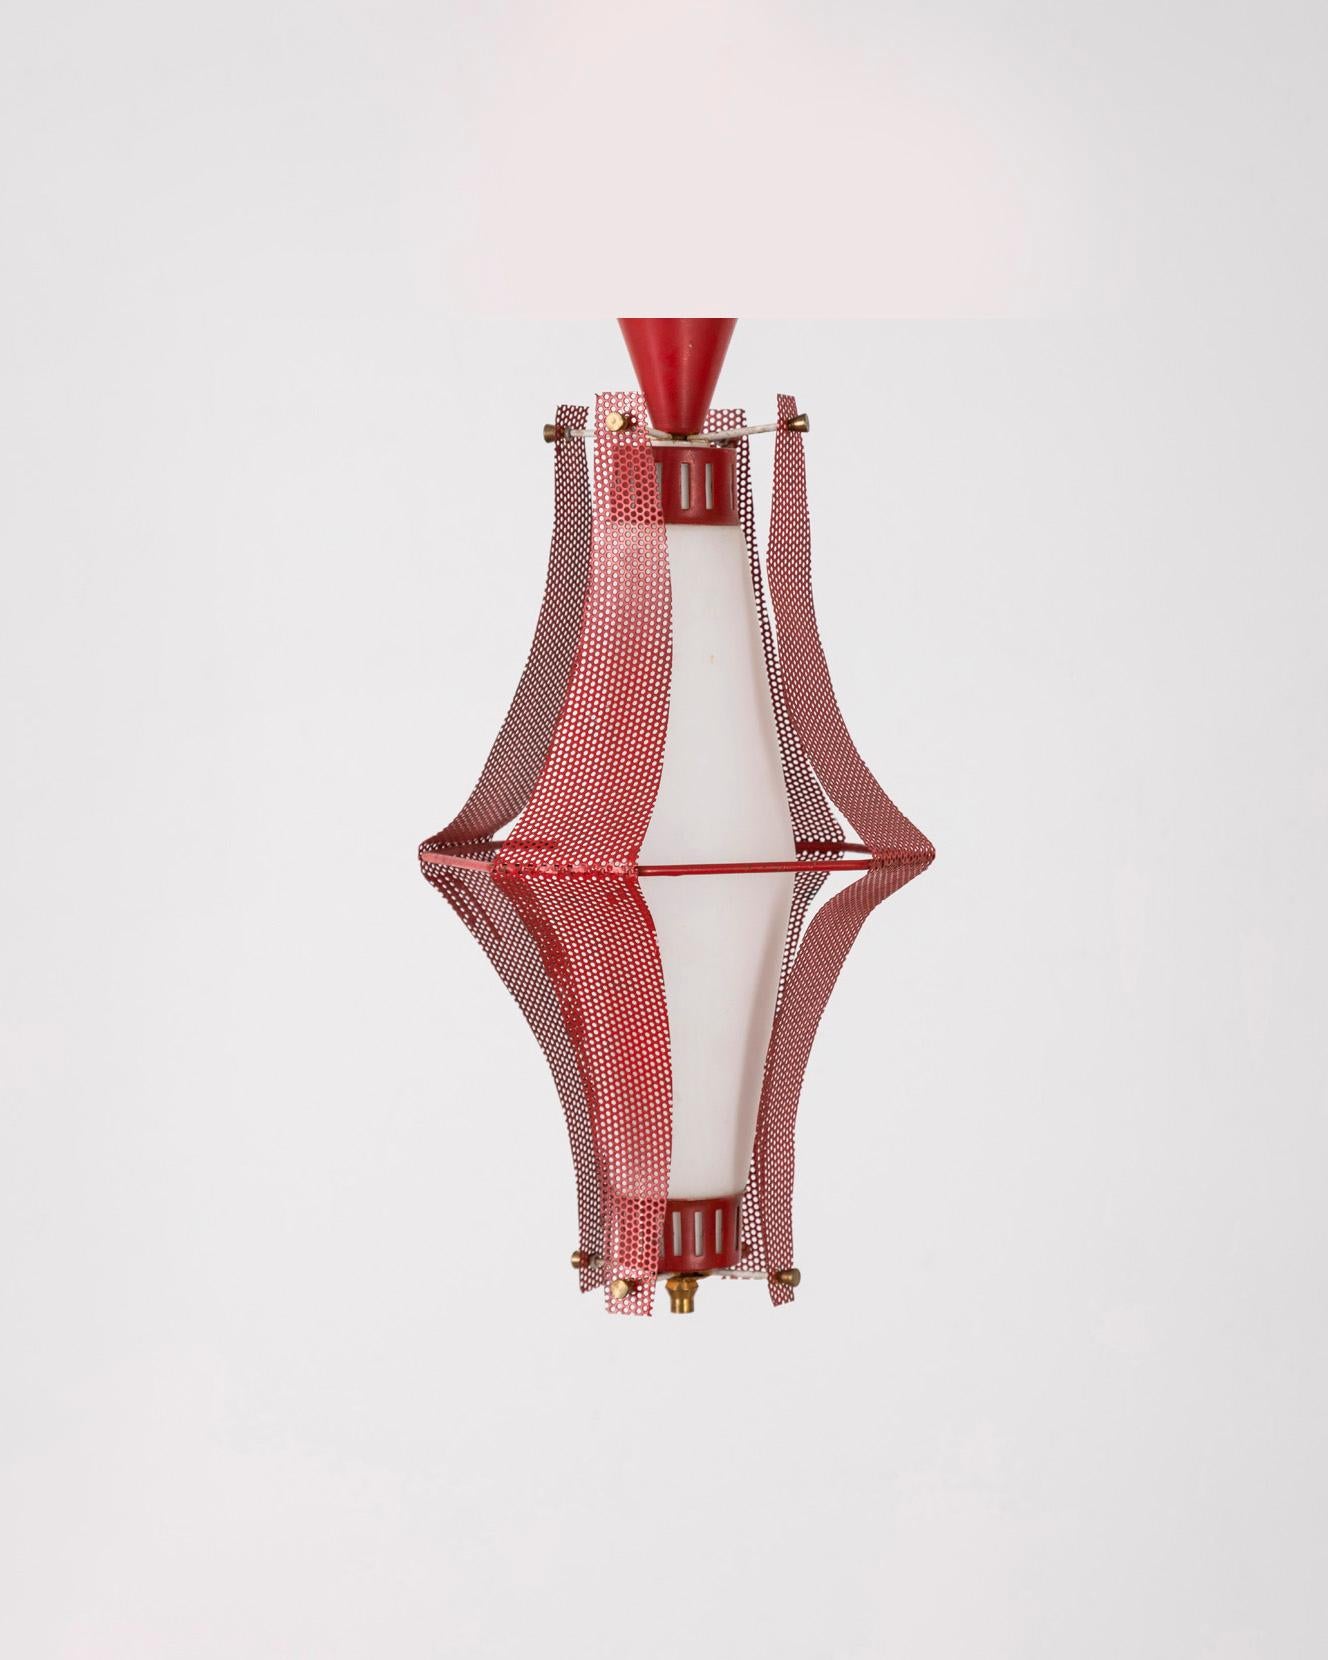 Hängeleuchte mit rotem Metallgestell und weißem Glasschirm, italienisches Design, 1970er Jahre.

ZUSTAND: In gutem, funktionsfähigem Zustand, kann witterungsbedingte Abnutzungserscheinungen aufweisen.

ABMESSUNGEN: Höhe 40 cm; Durchmesser 19